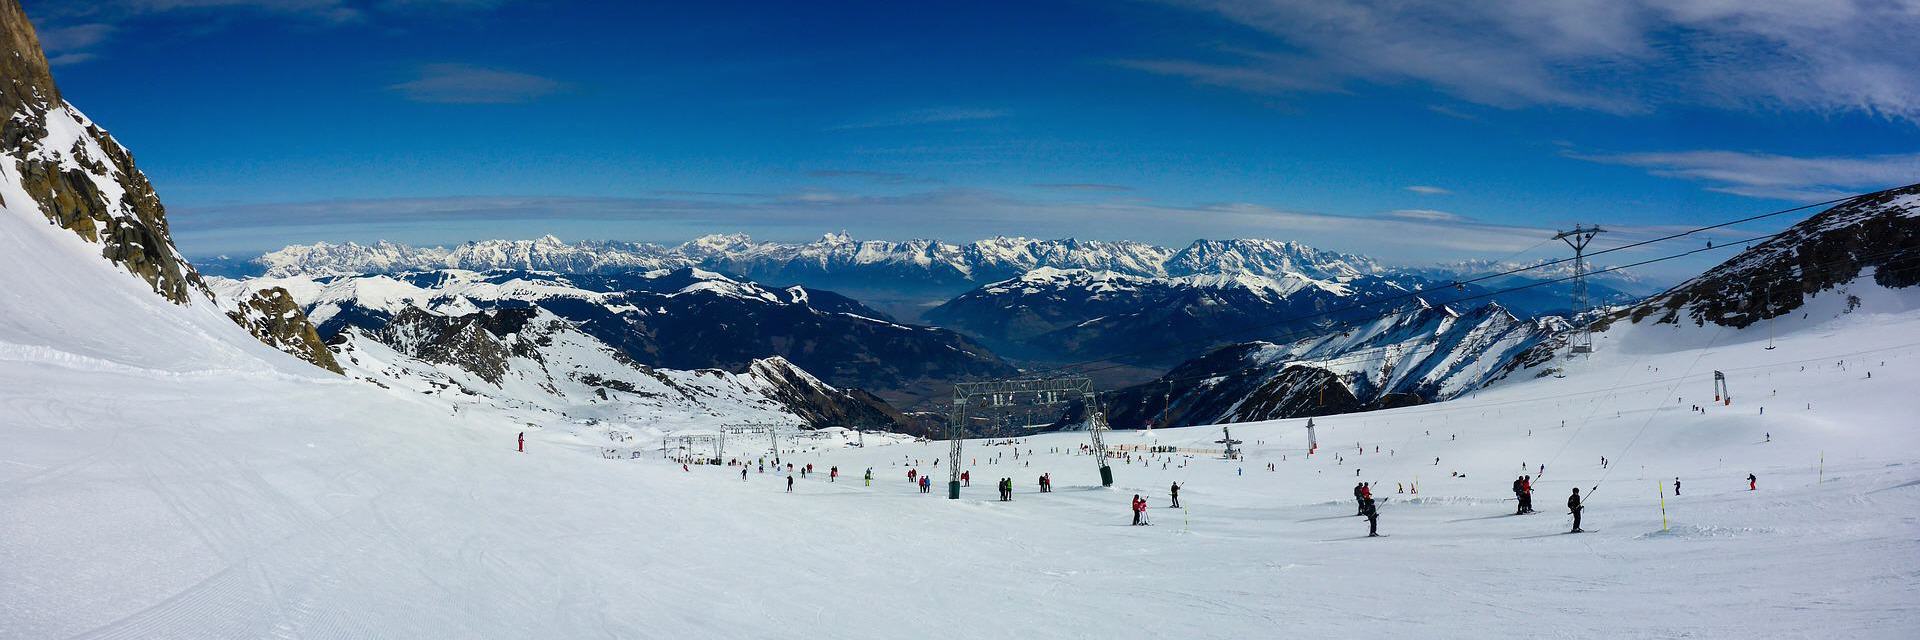 Ferienhaus Sonthofen in verschneiten Bergen zum Skifahren